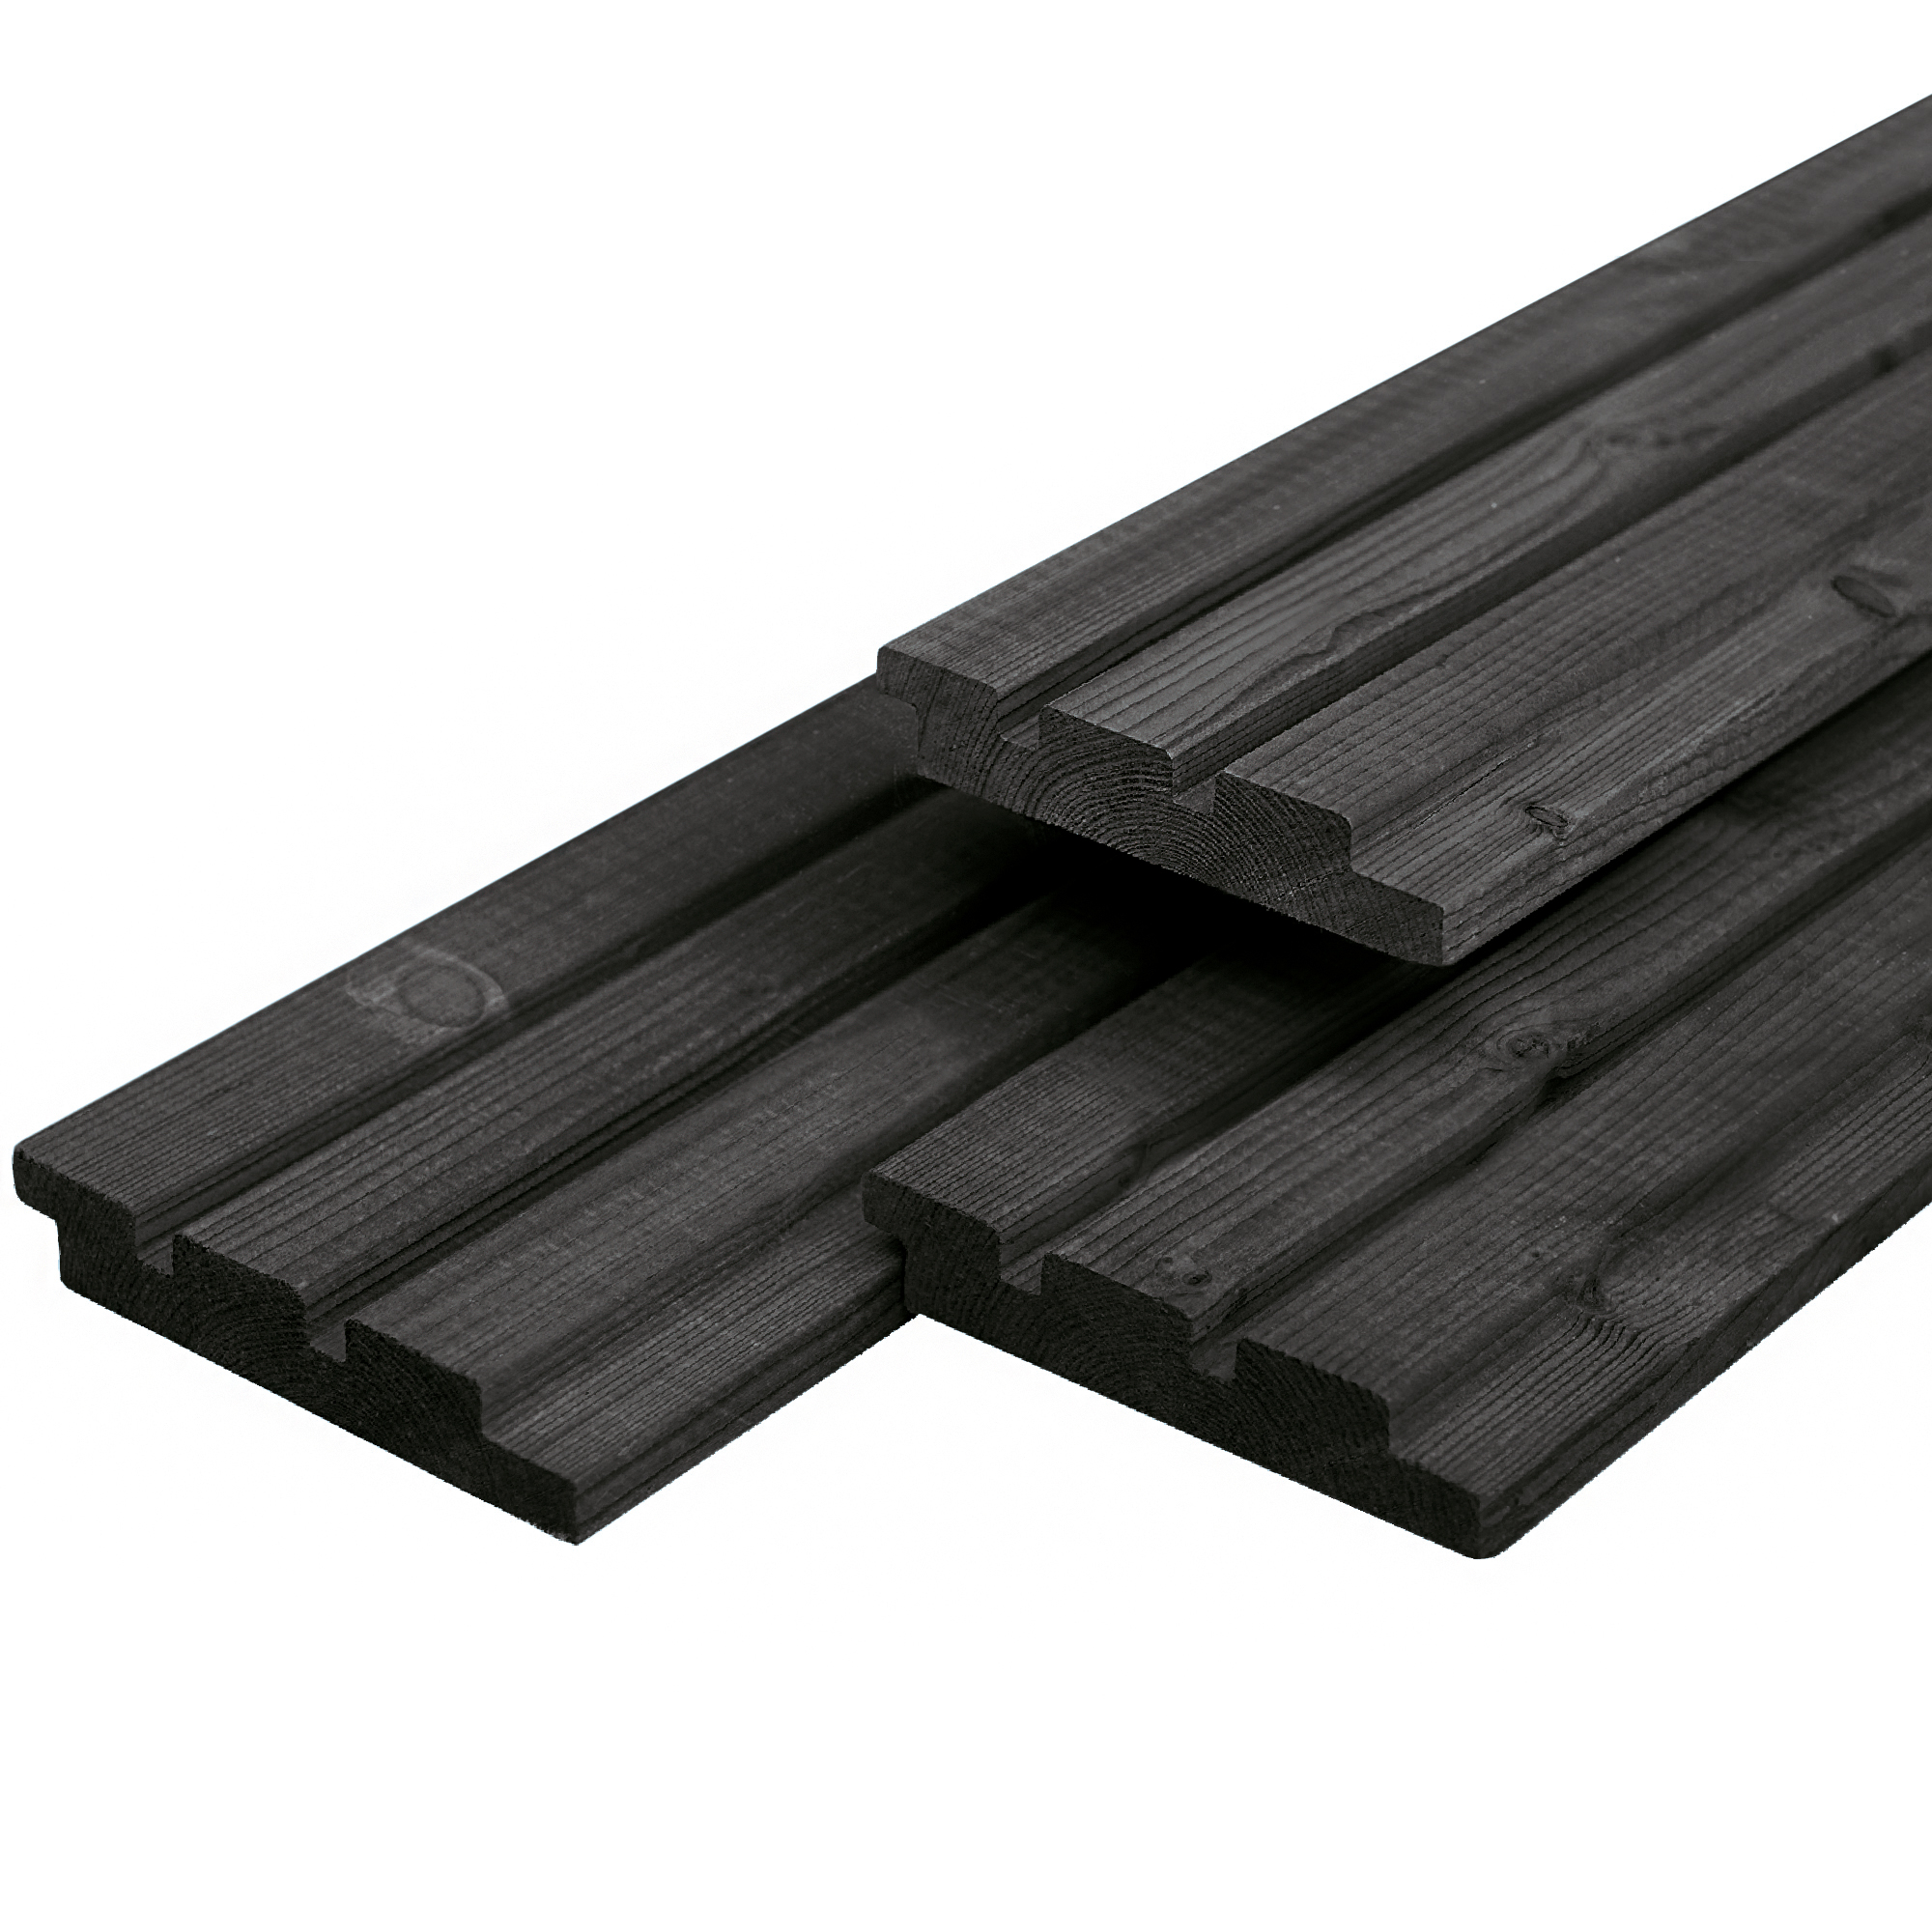 Dreifach-Profilholz aus Douglasie schwarz gespritzt 1.9x13.0x420cm